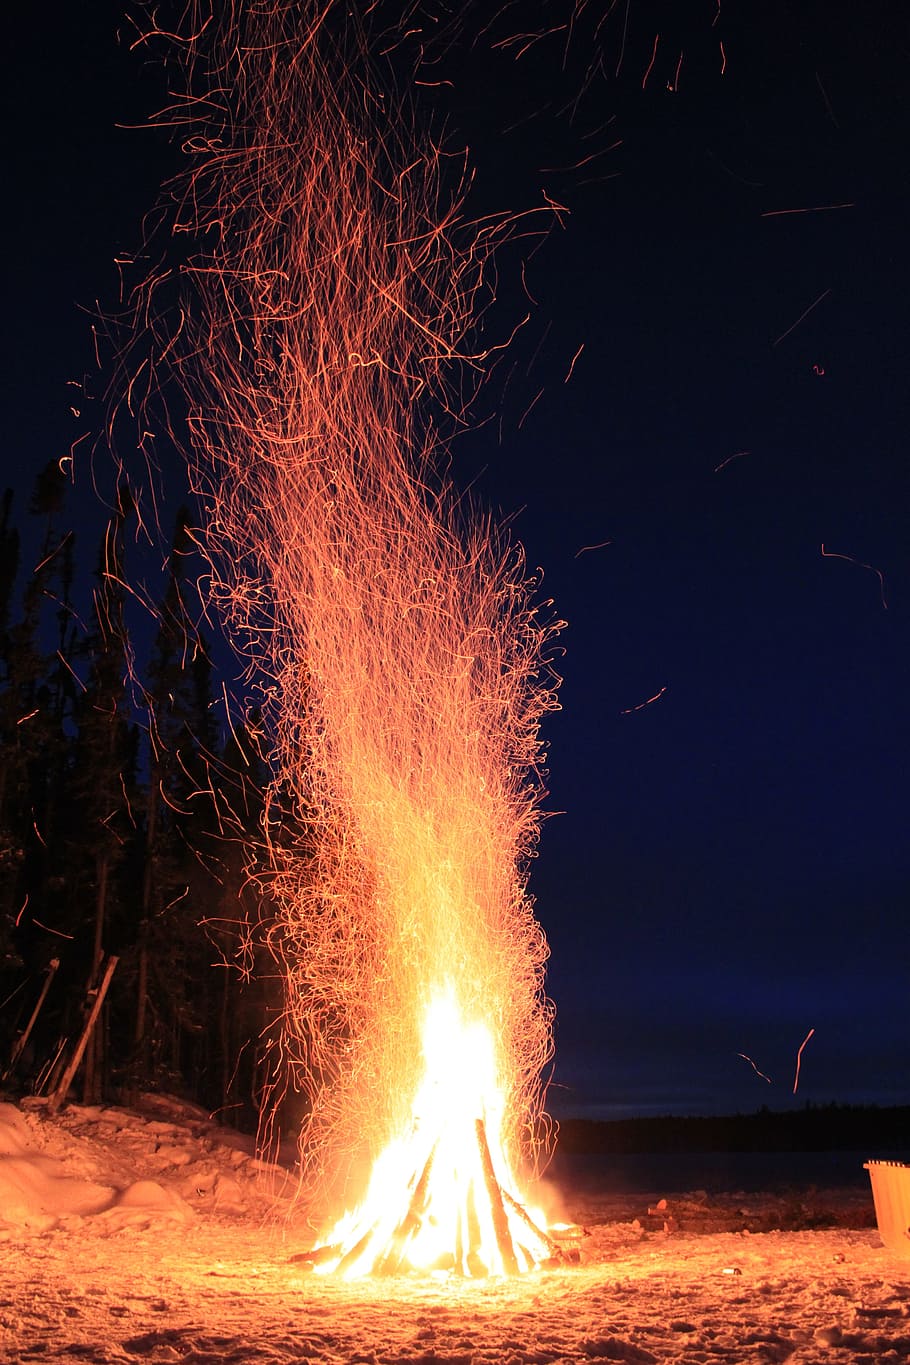 Fuego, invierno, calor, llama, ardor, noche, calor - temperatura, fogata, sin gente, quema